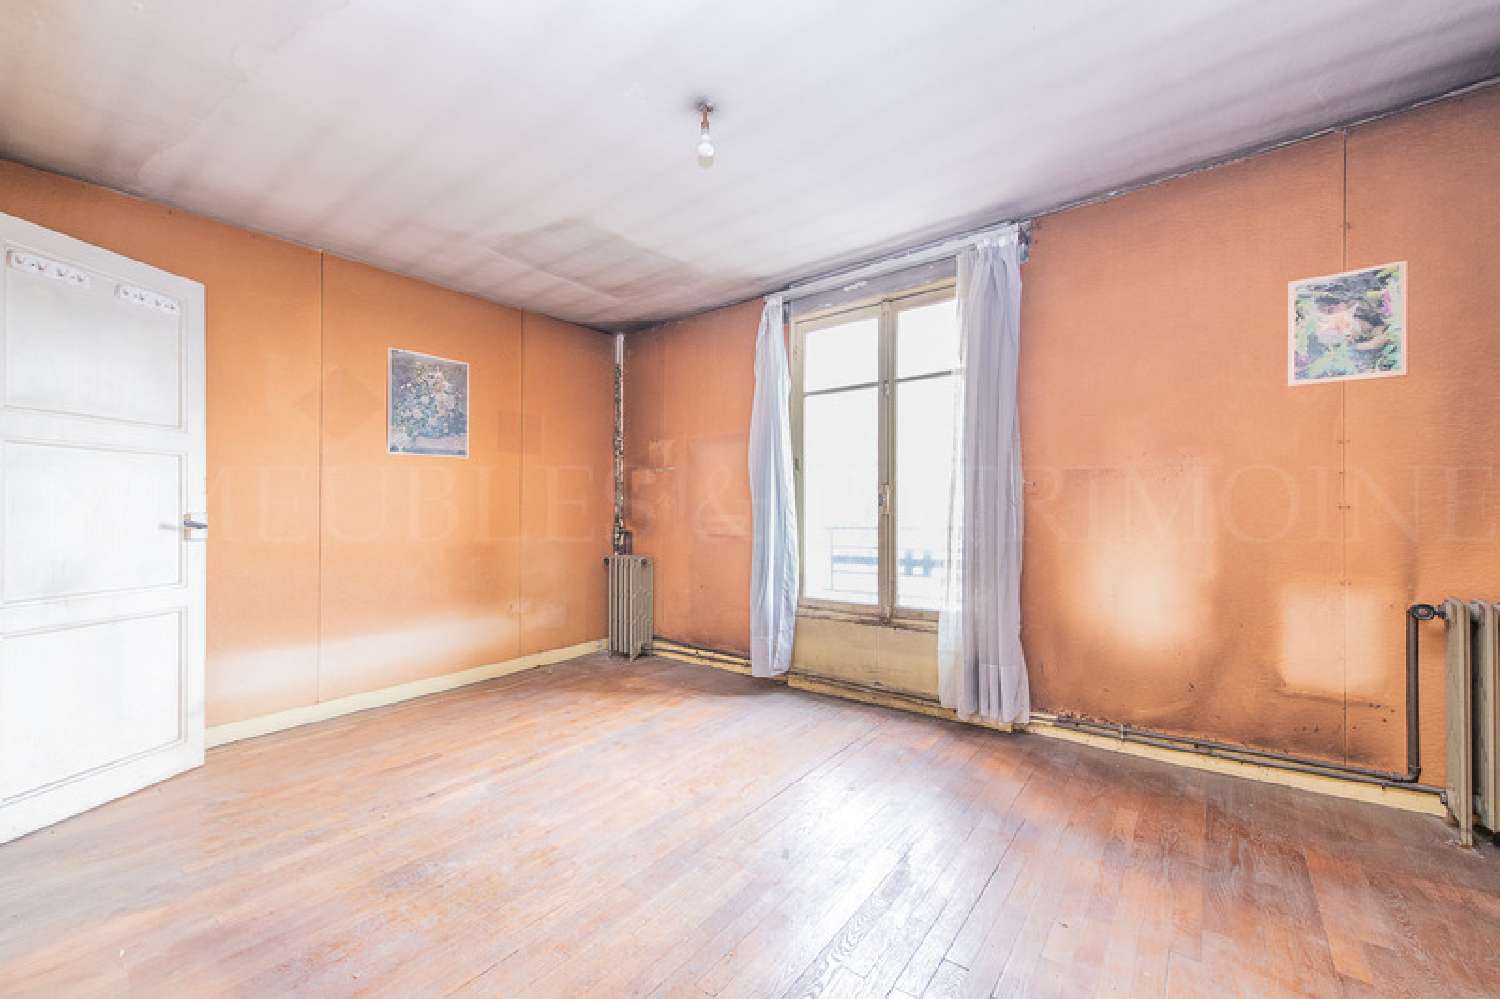  à vendre appartement Boulogne-Billancourt Hauts-de-Seine 2